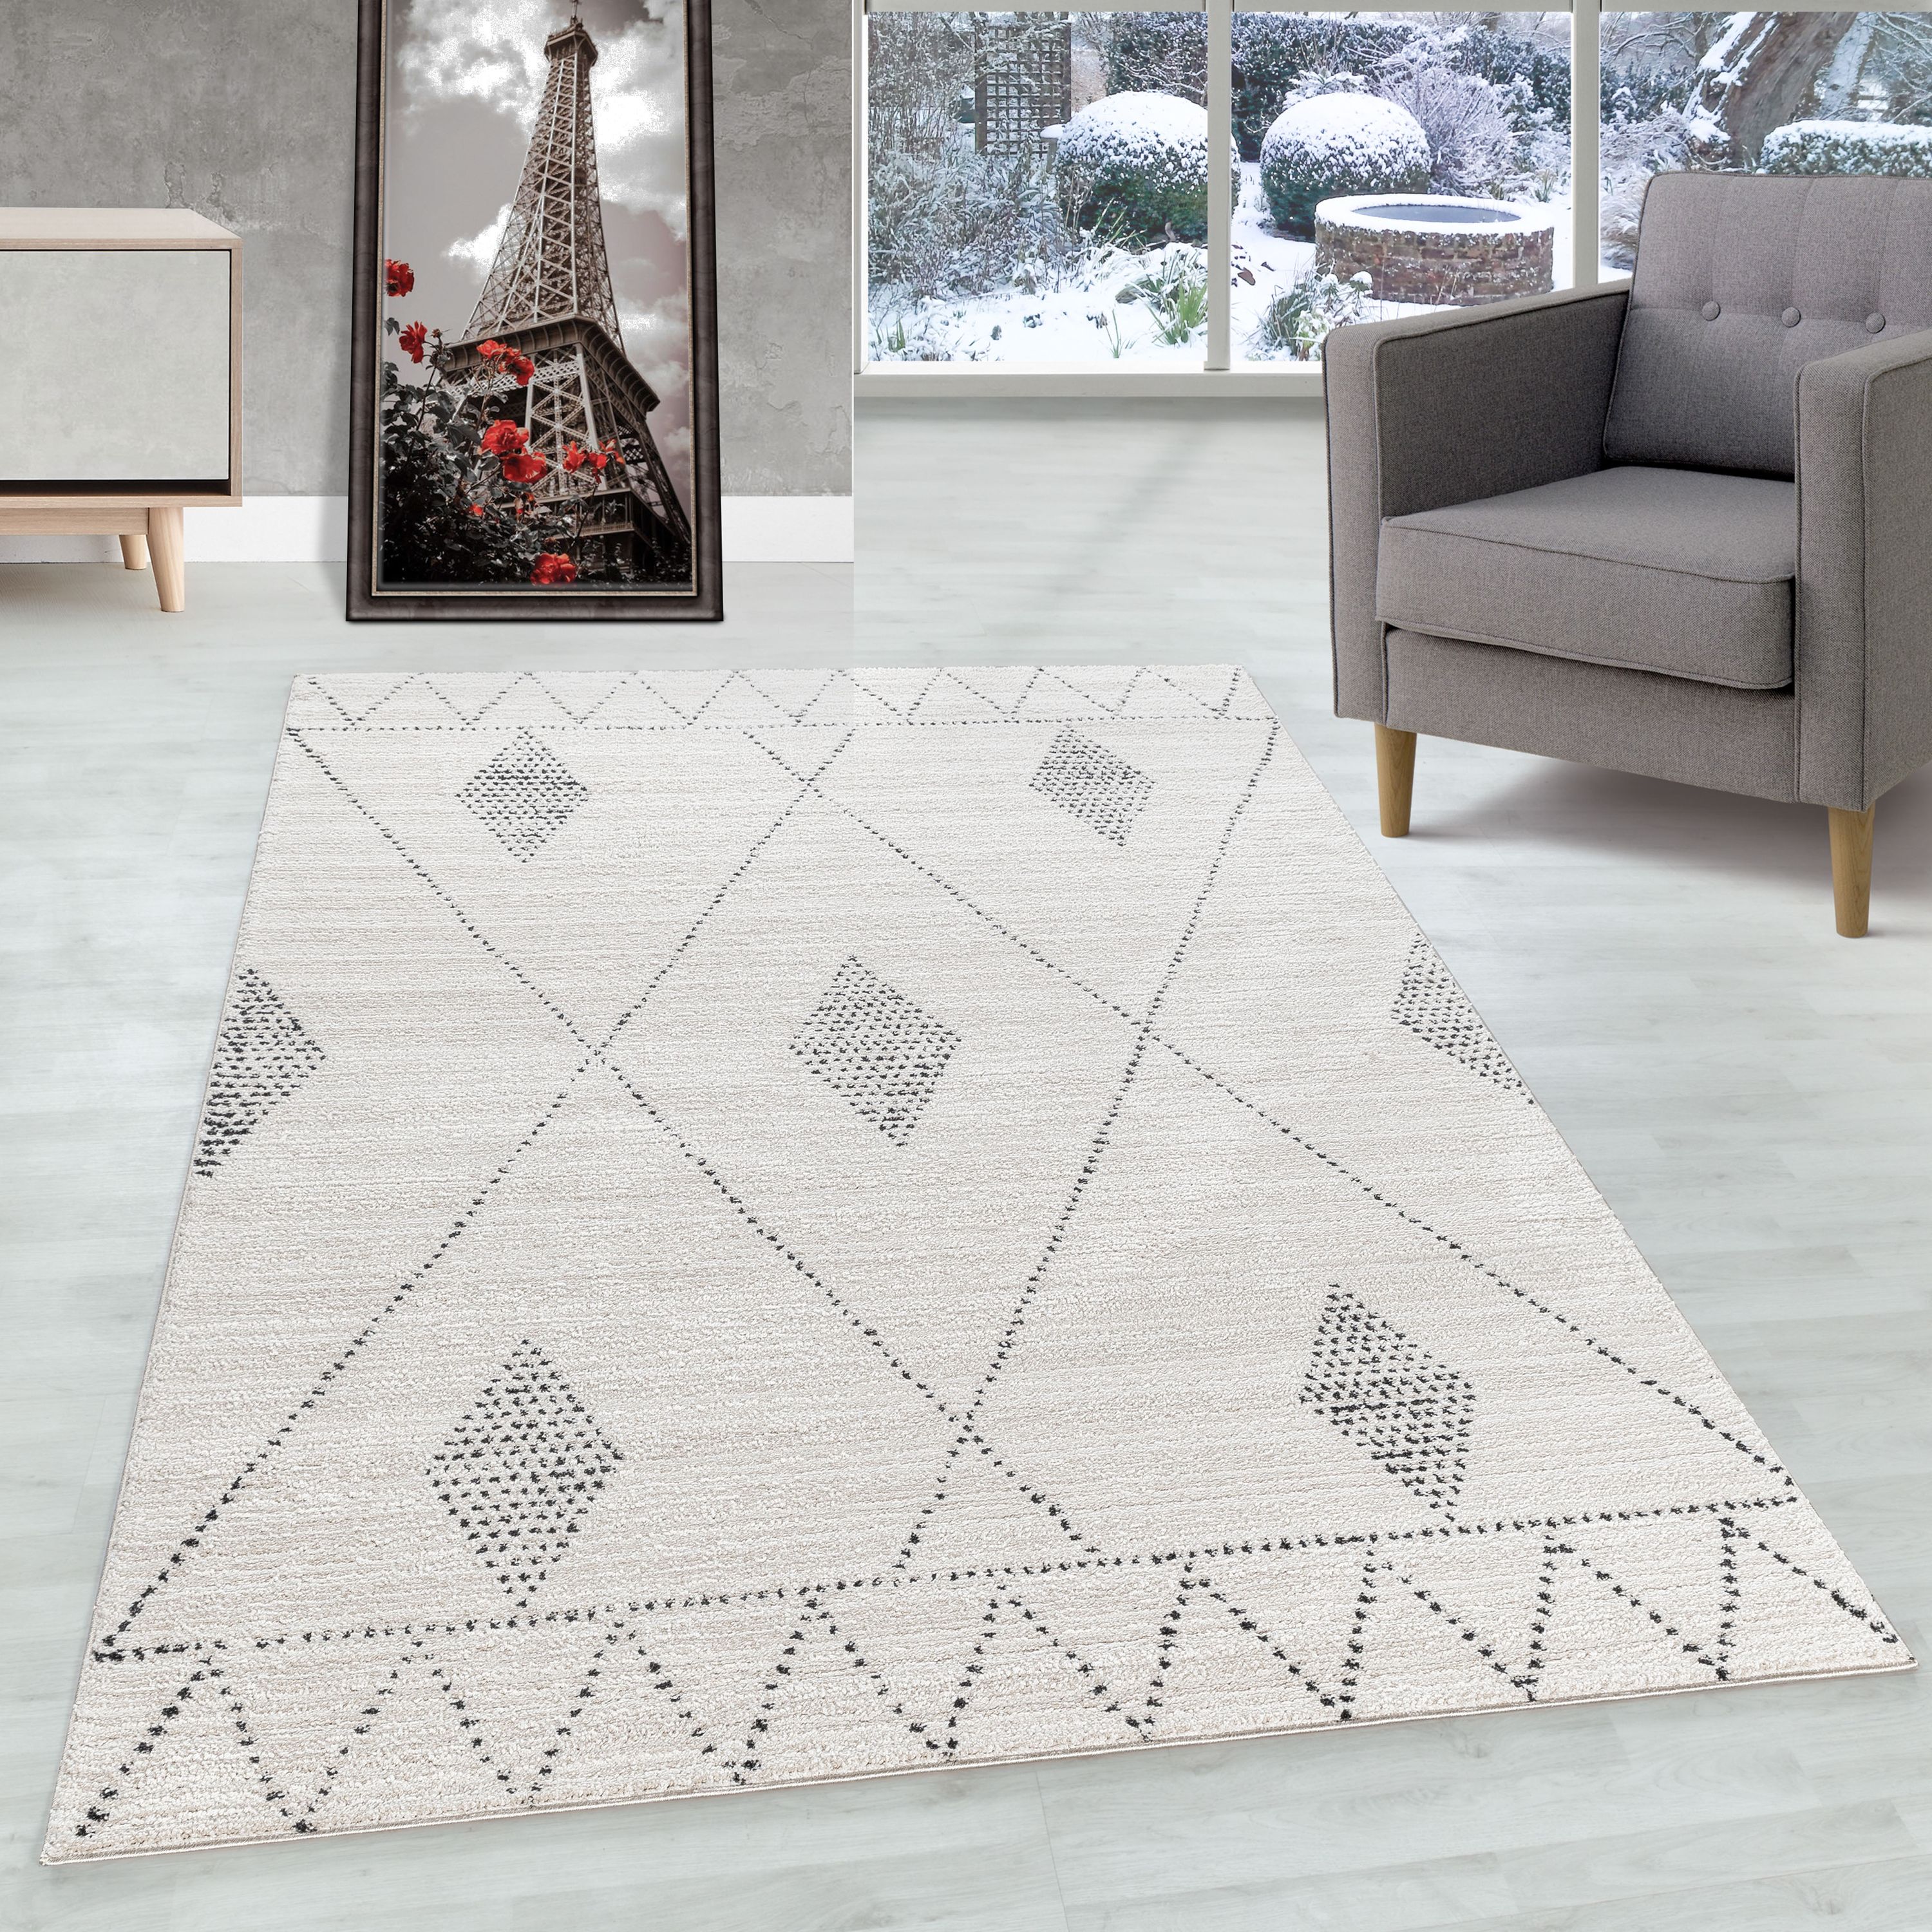 Kurzflor Teppich Wohnzimmer Berber Design Skandinavische Stil Natur Optik